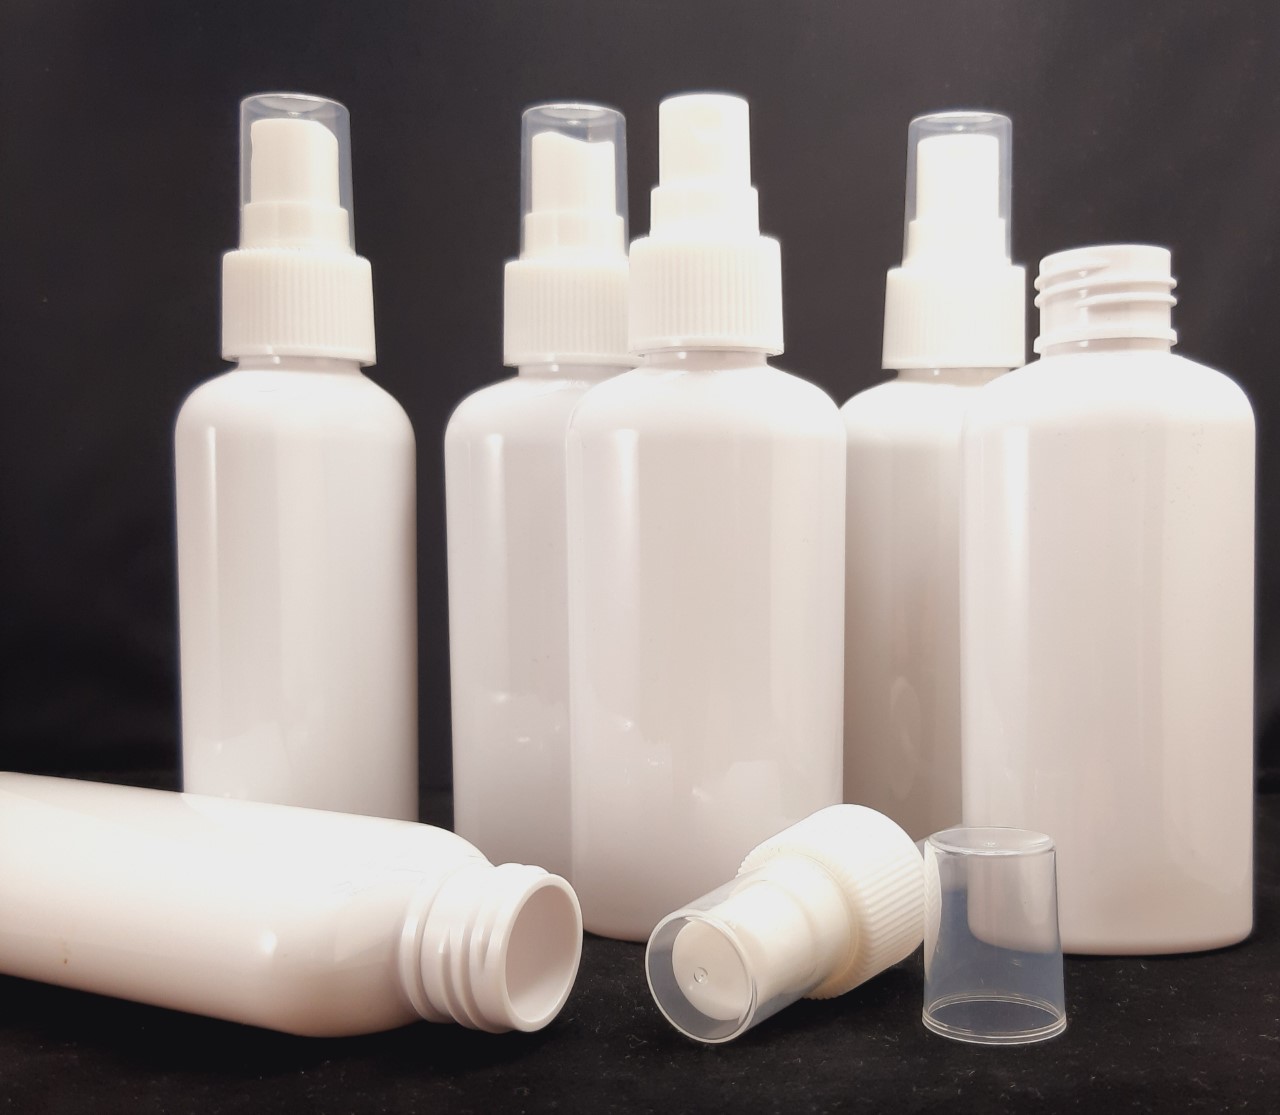 10x Lege plastic sprayflesjes van 100ml, wit en voor post - BeriVita.com - Natuurlijk & Puur